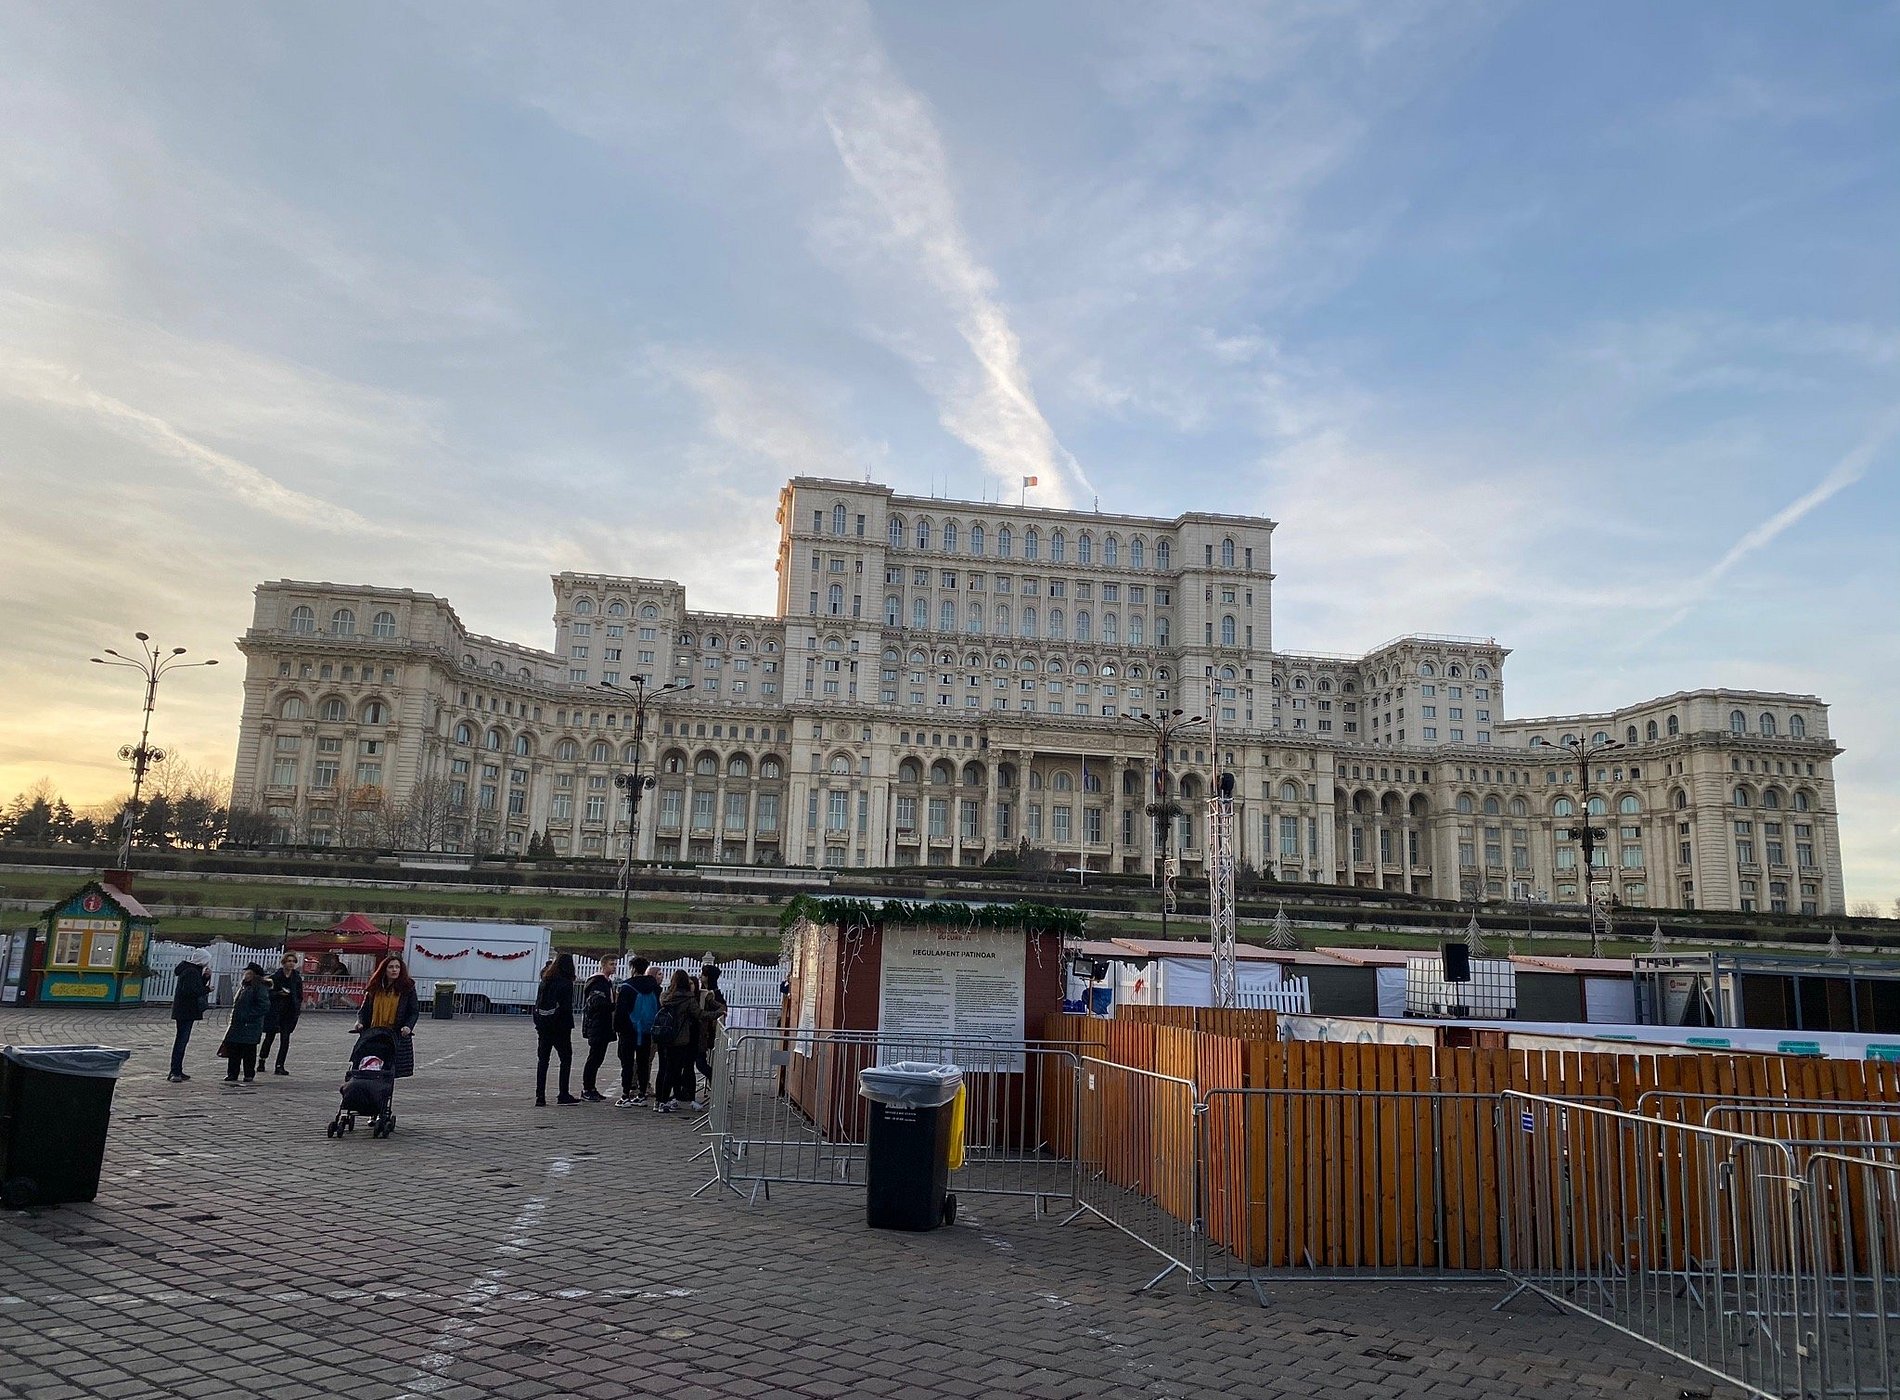 Parliament Square image